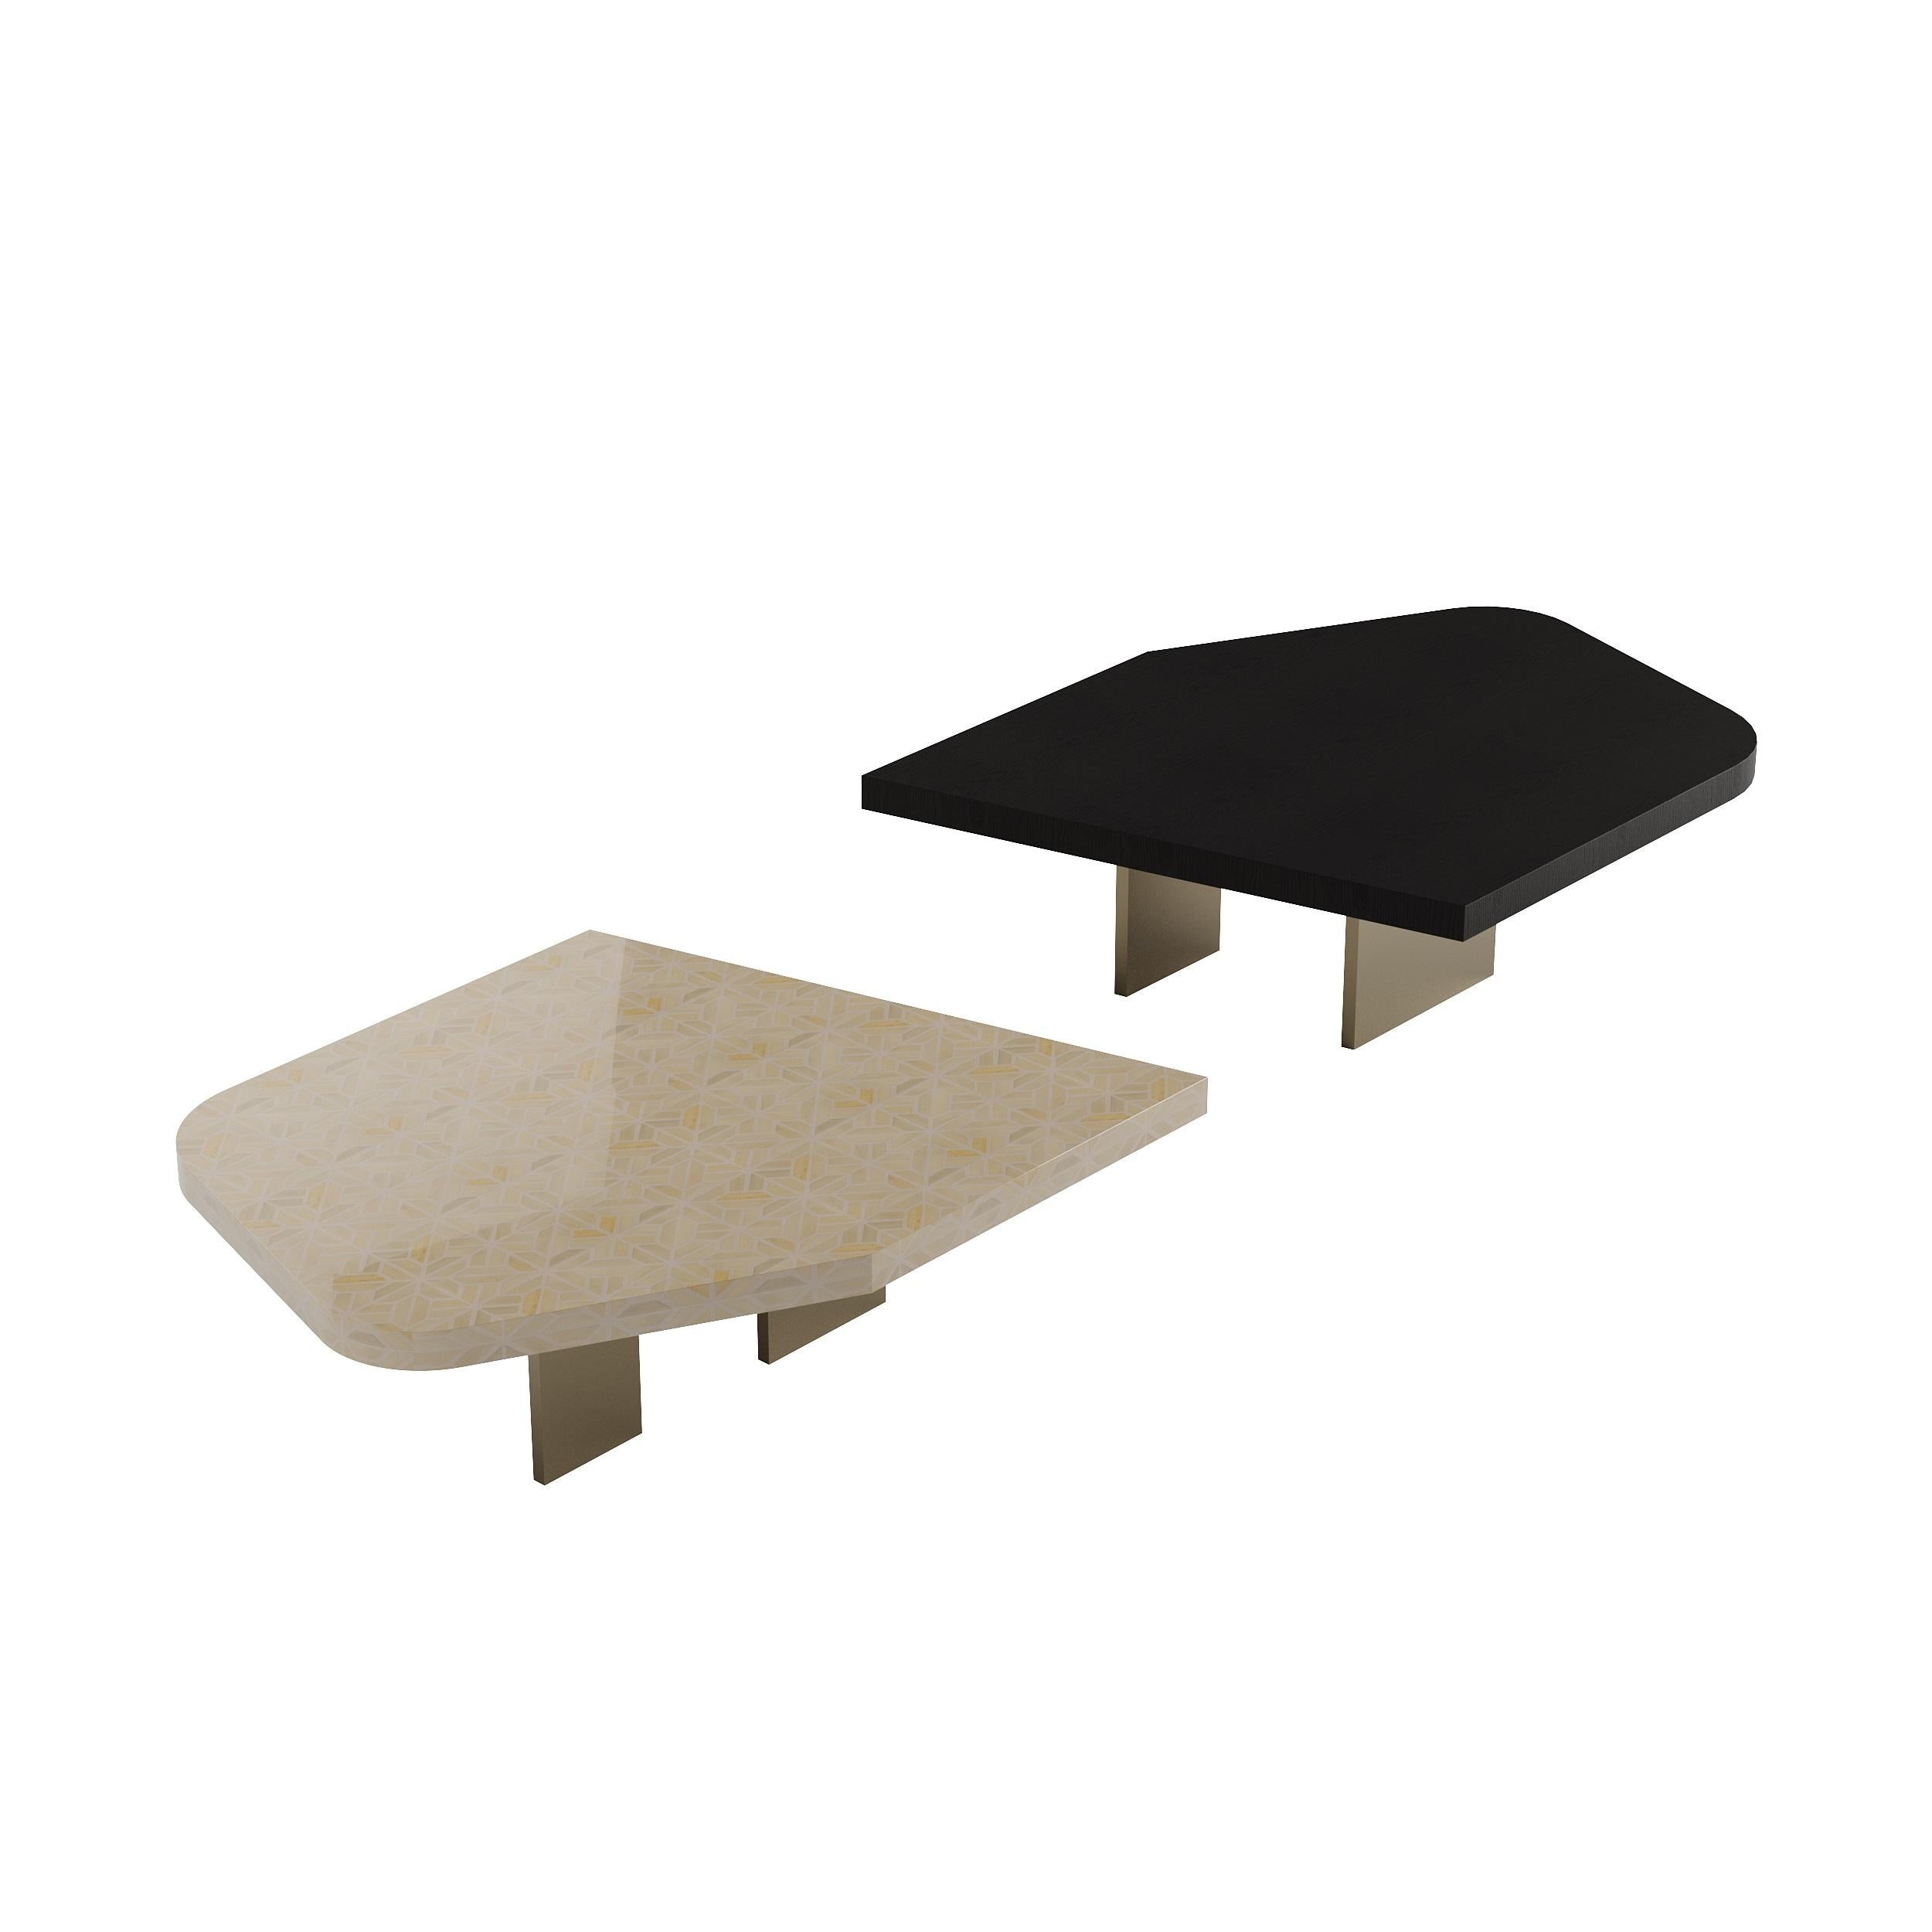 Der Mizu Center Table mit seiner auffälligen Einlage aus Knochen und Harz steht für eine sehr warme und neutrale Kollektion von Möbelstücken, die durch die Verwendung von Eschenholz und Metall modernisiert werden. Der Mizu Bone Inlay Center Table